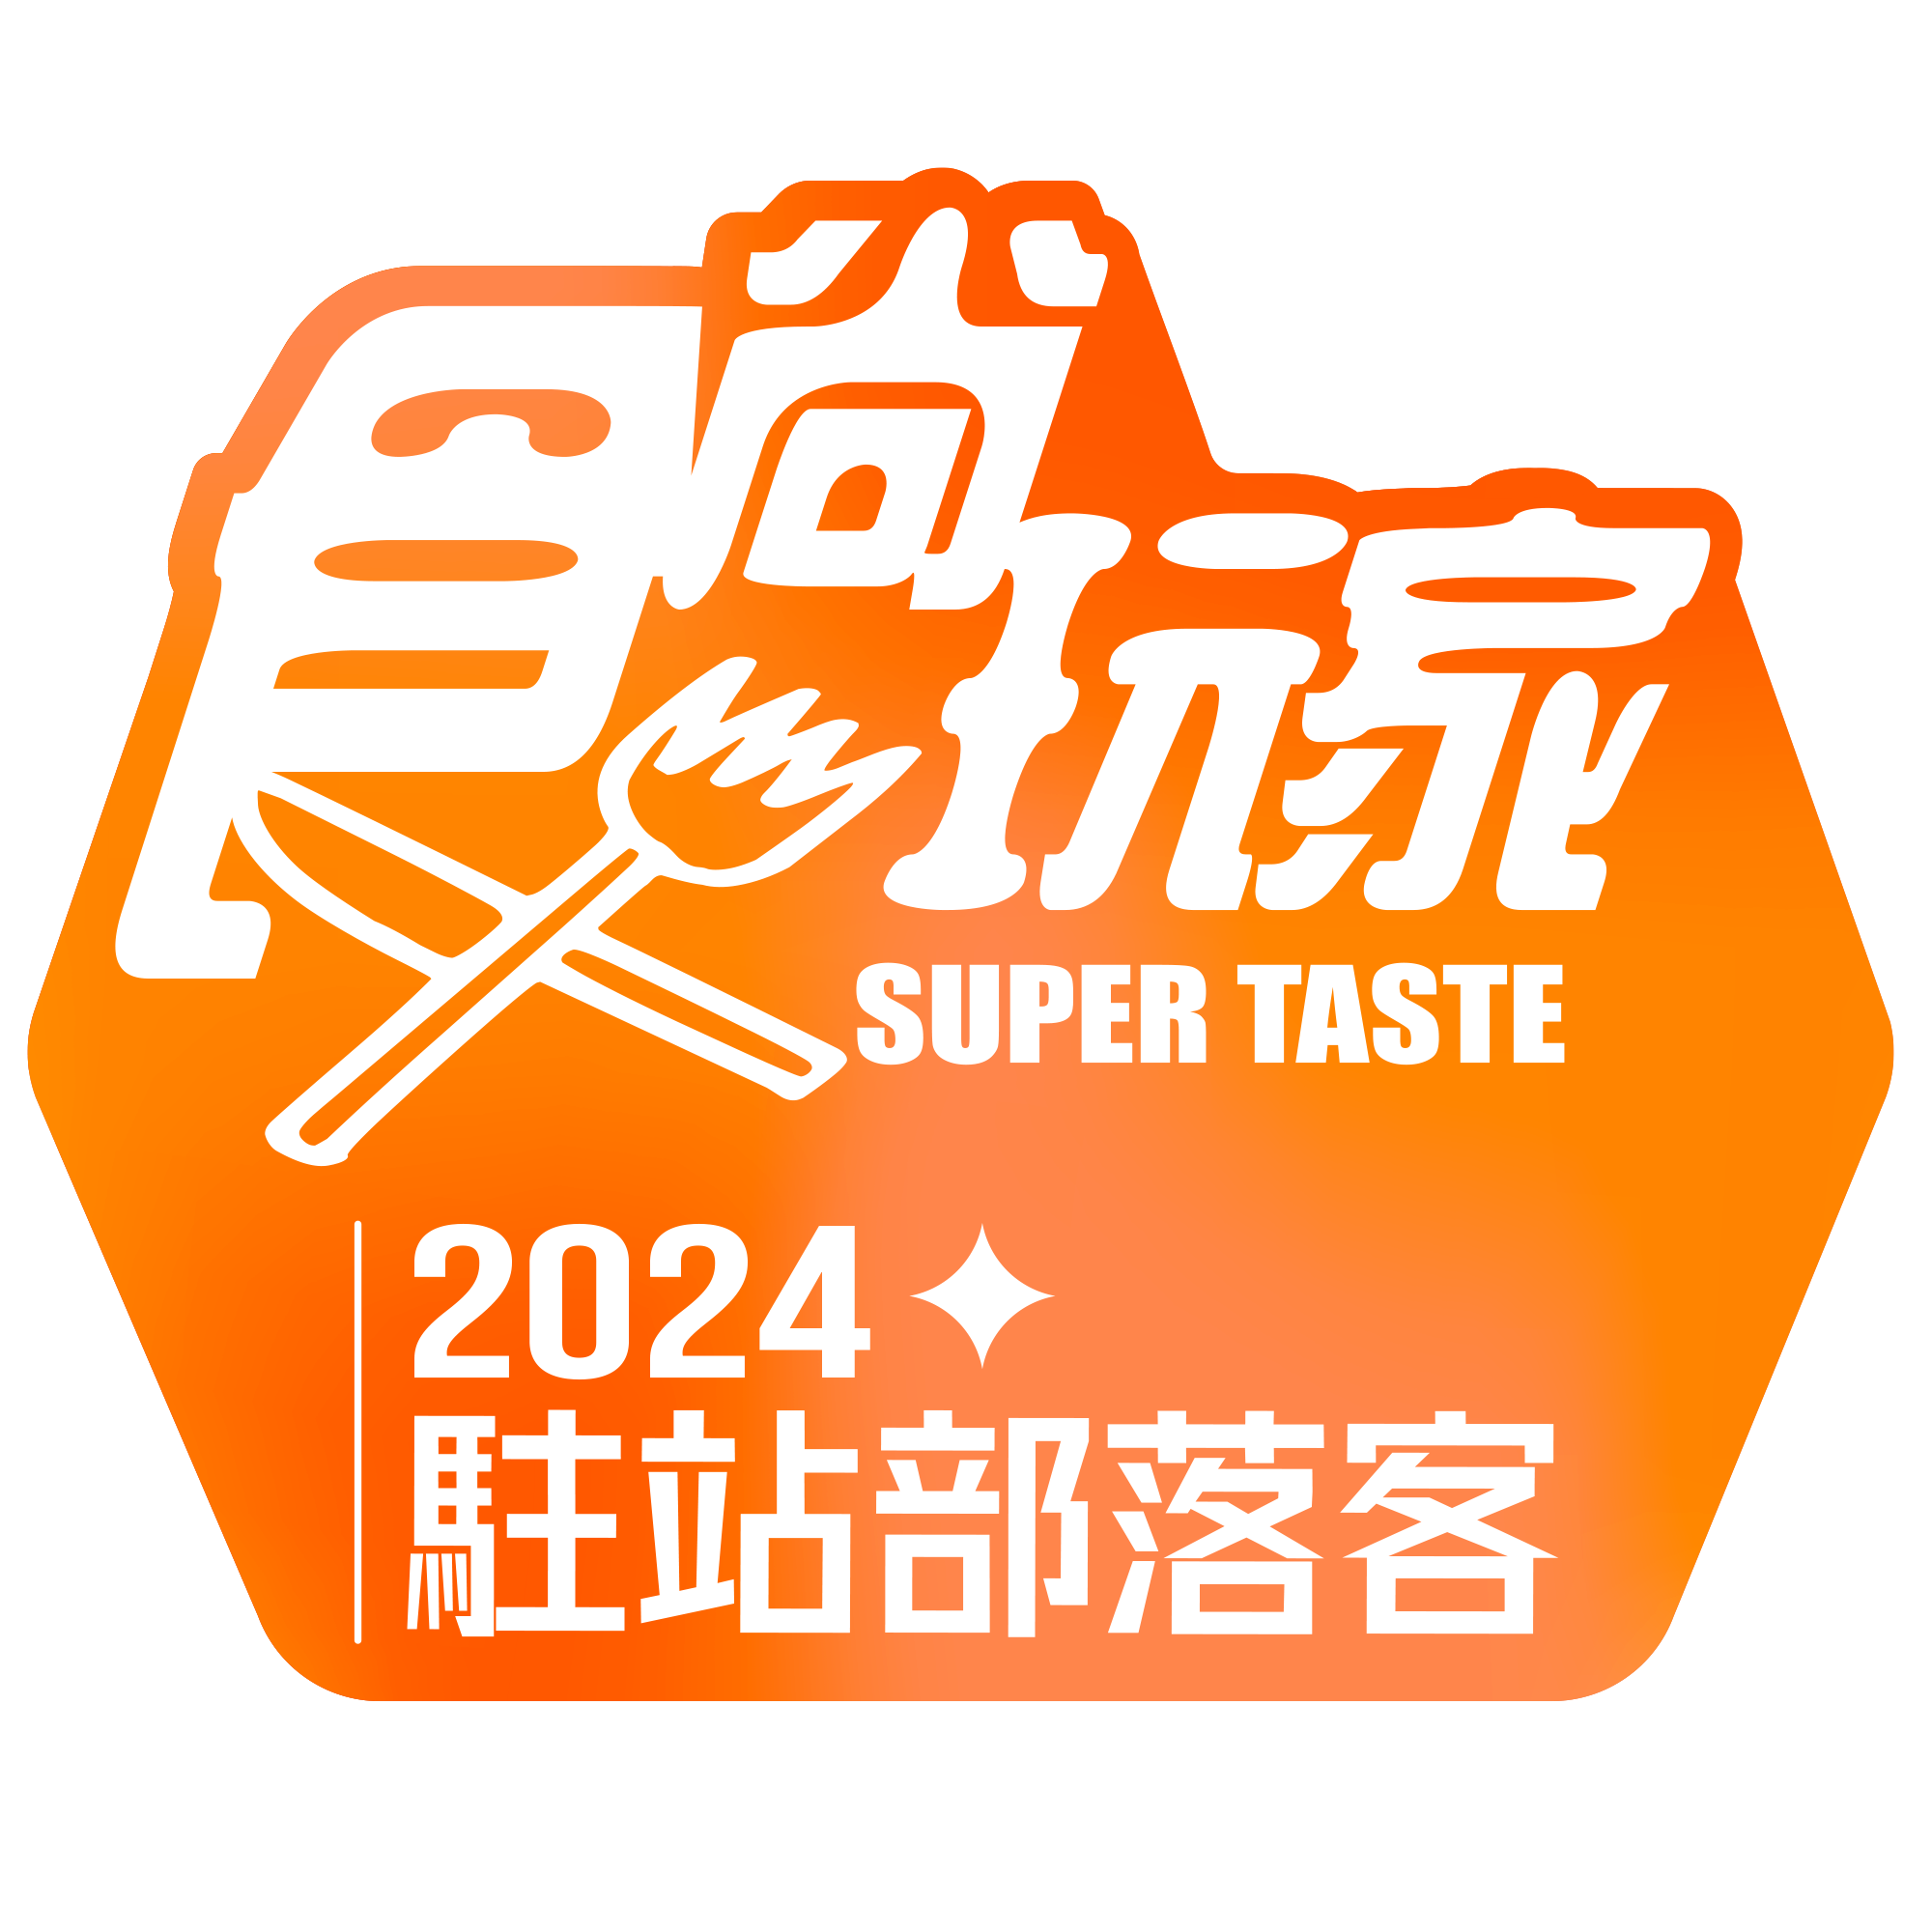 食尚玩家 super taste 2024 駐站部落客